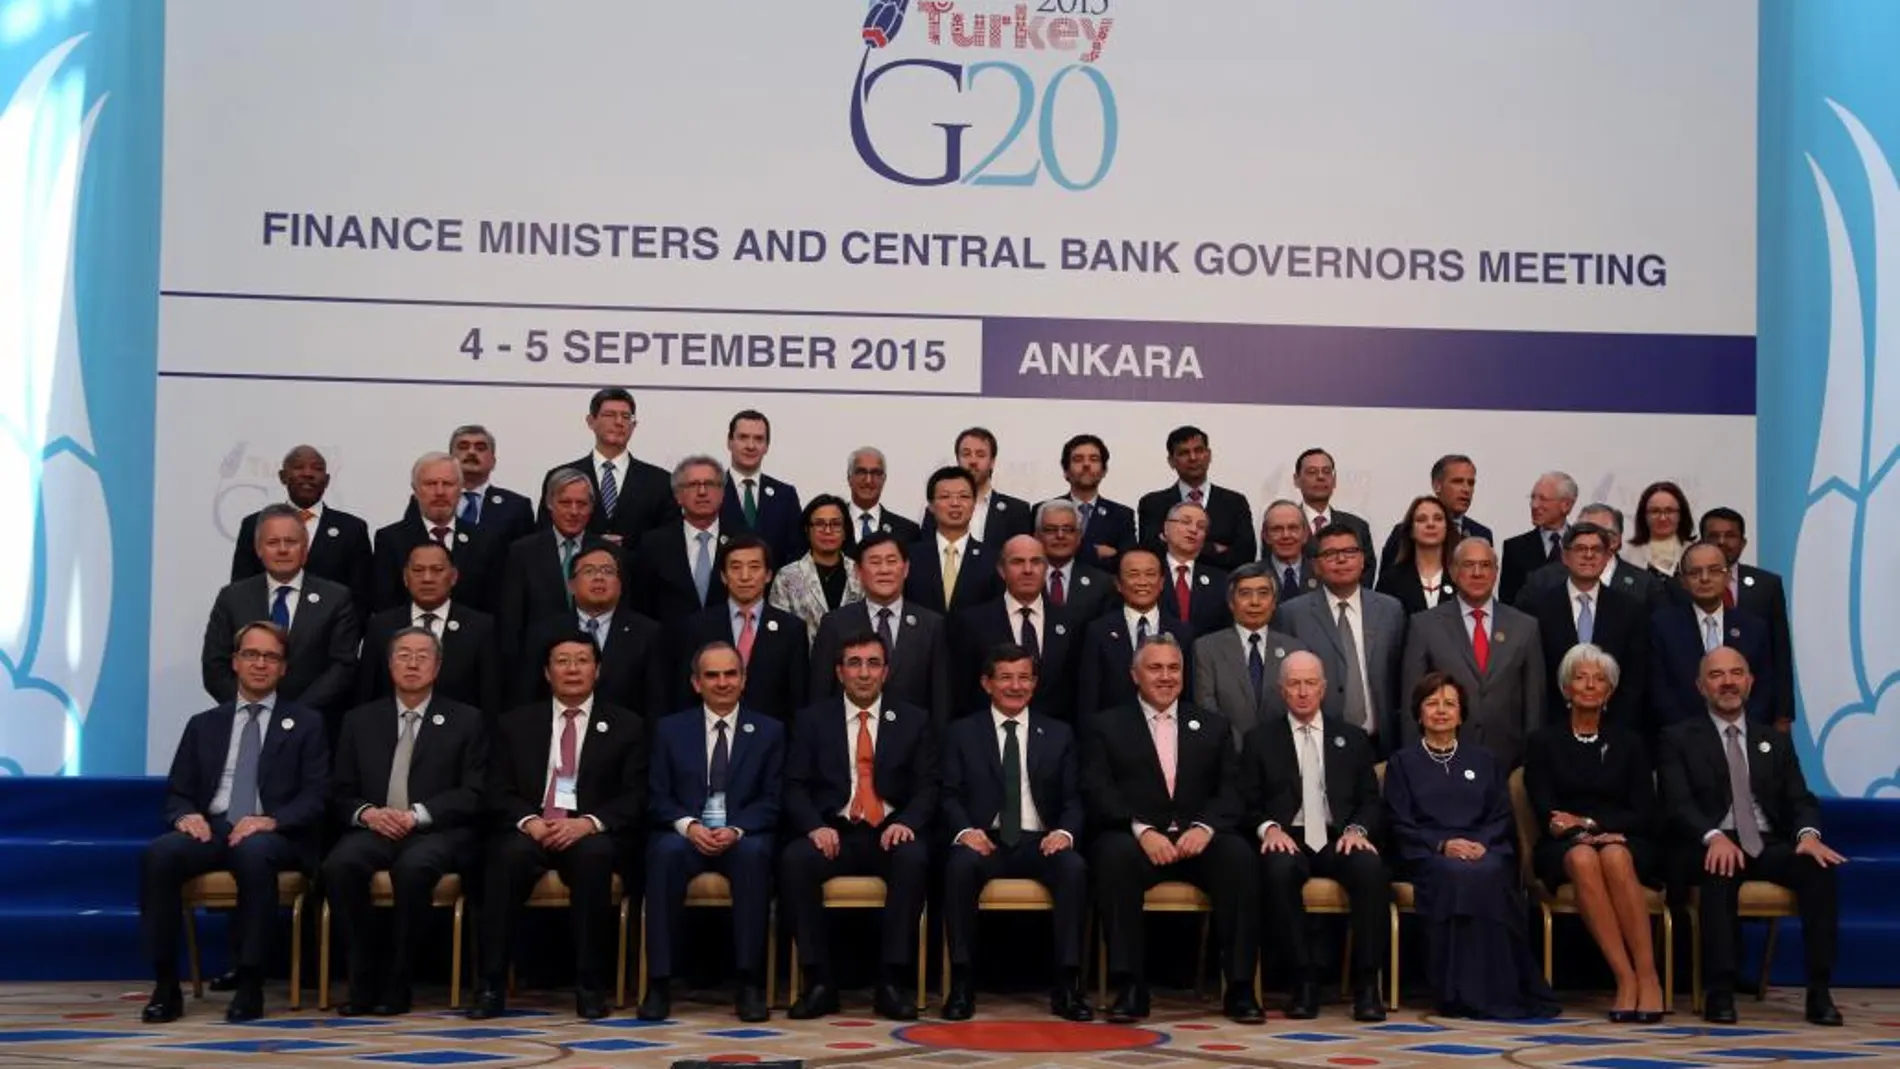 Los ministro de Finanzas del G20 posan en la Cumbre de Ankara.